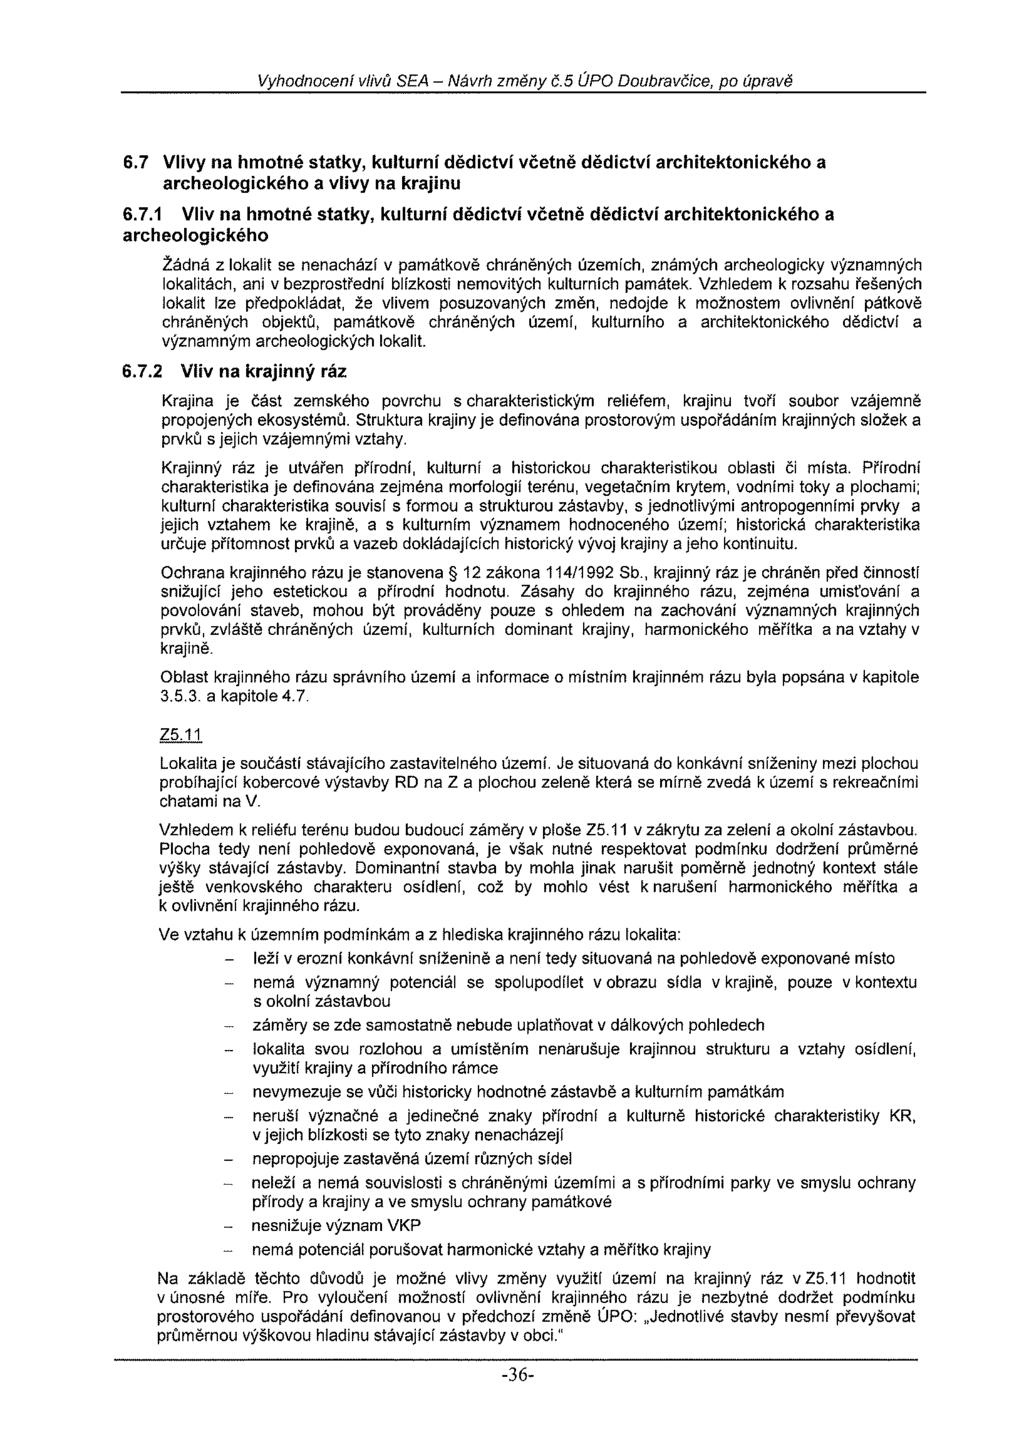 Vyhodnocení vlivů SEA - Návrh změny č.5 ÚPO Doubravčice, po úpravě 6.7 